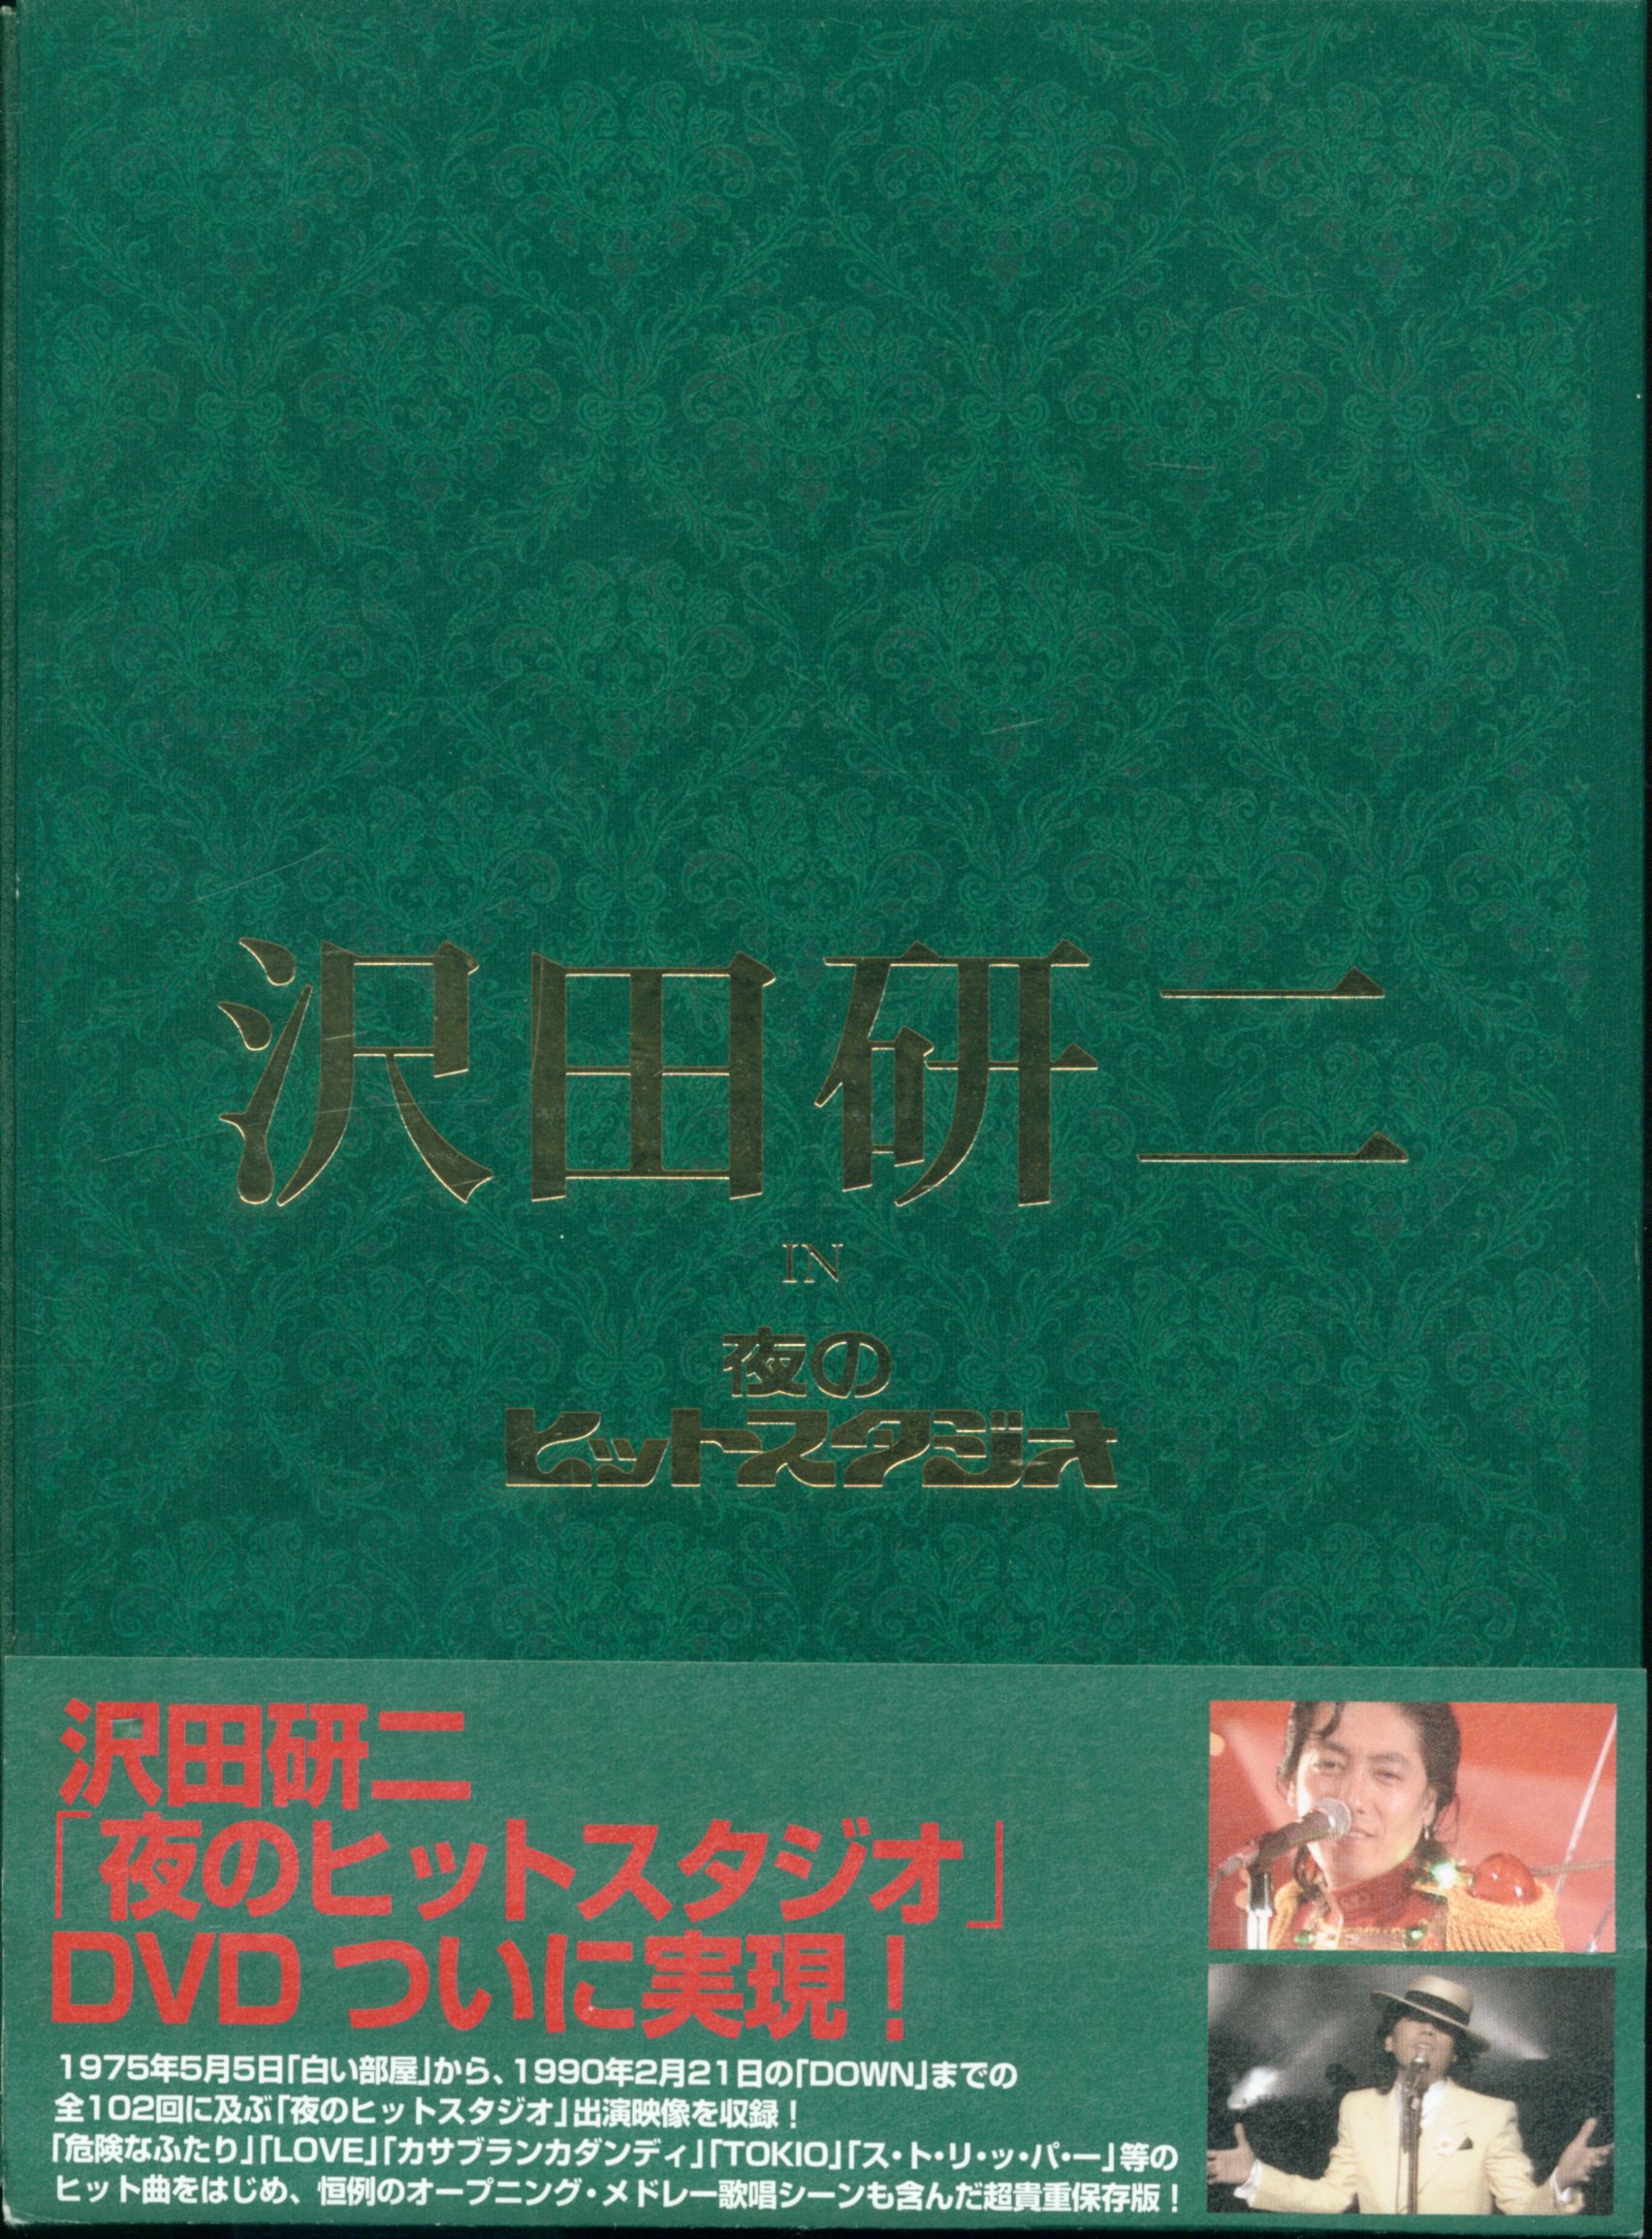 フジテレビ 沢田研二 IN 夜のヒットスタジオ DVD 6枚組 - ミュージック